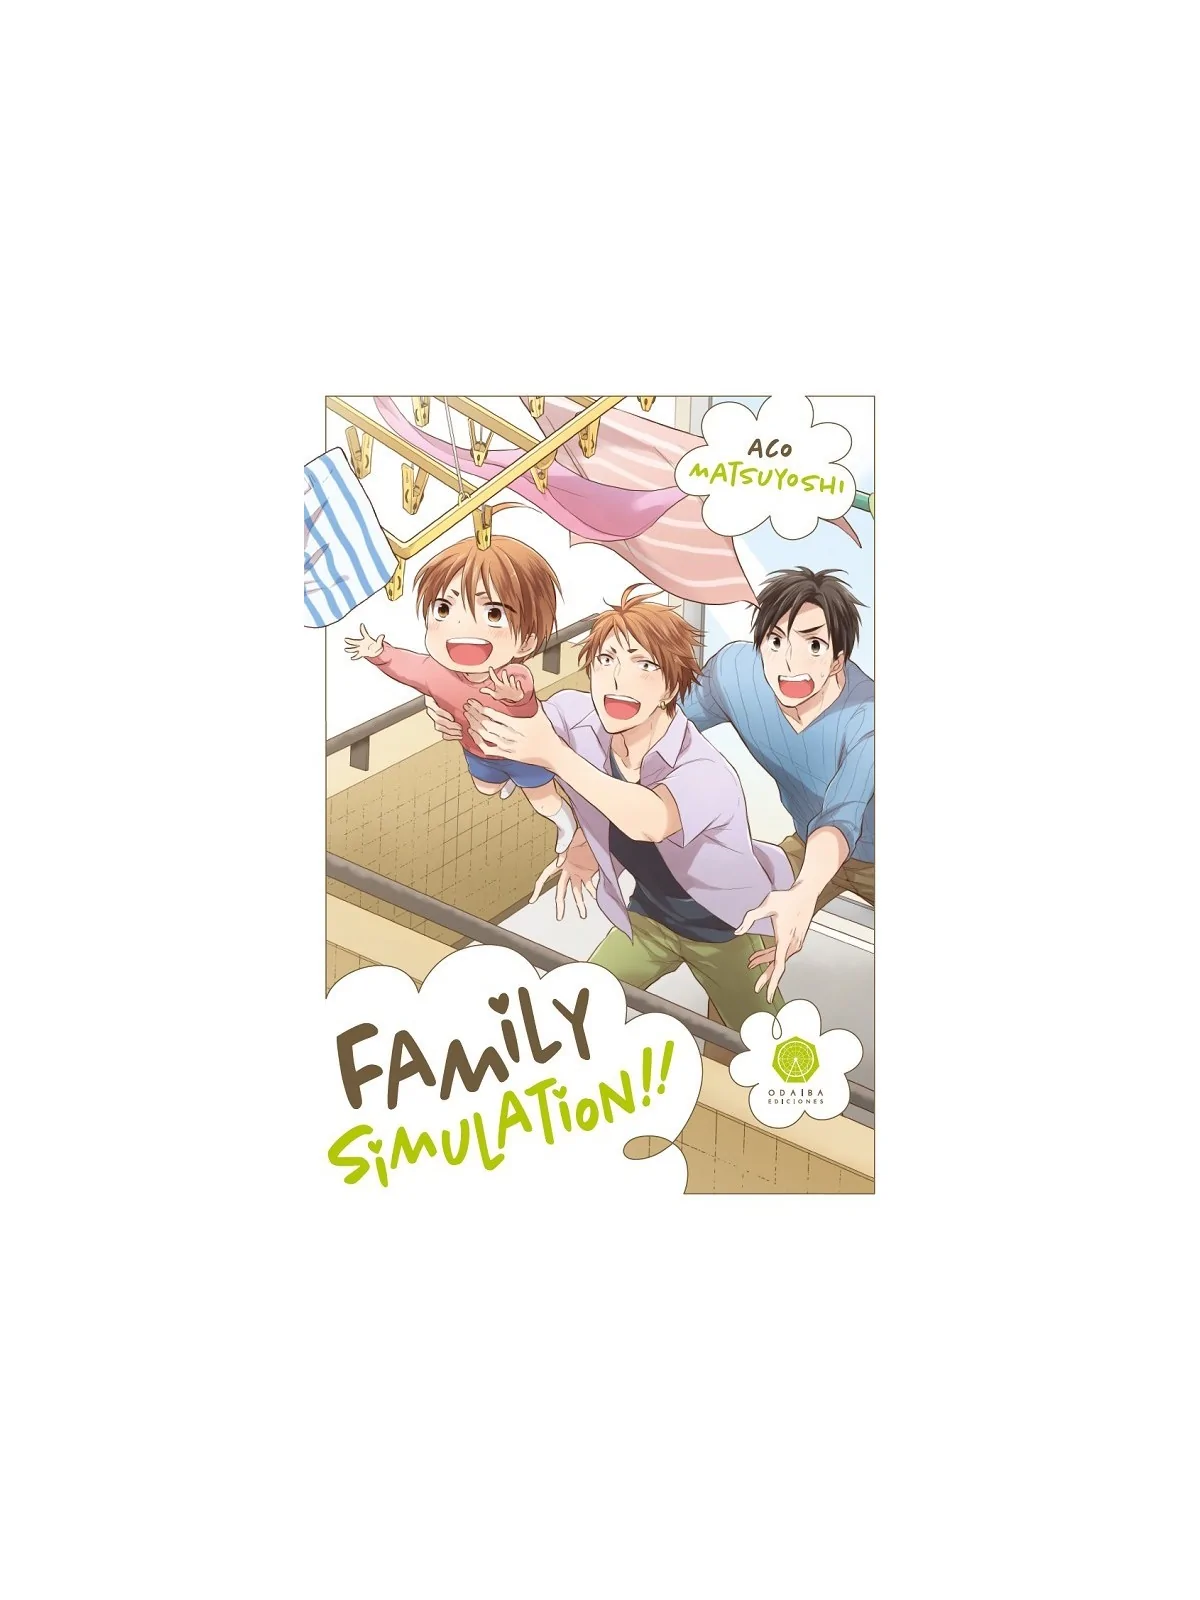 Comprar Family Simulation!! barato al mejor precio 8,55 € de Odaiba Ed